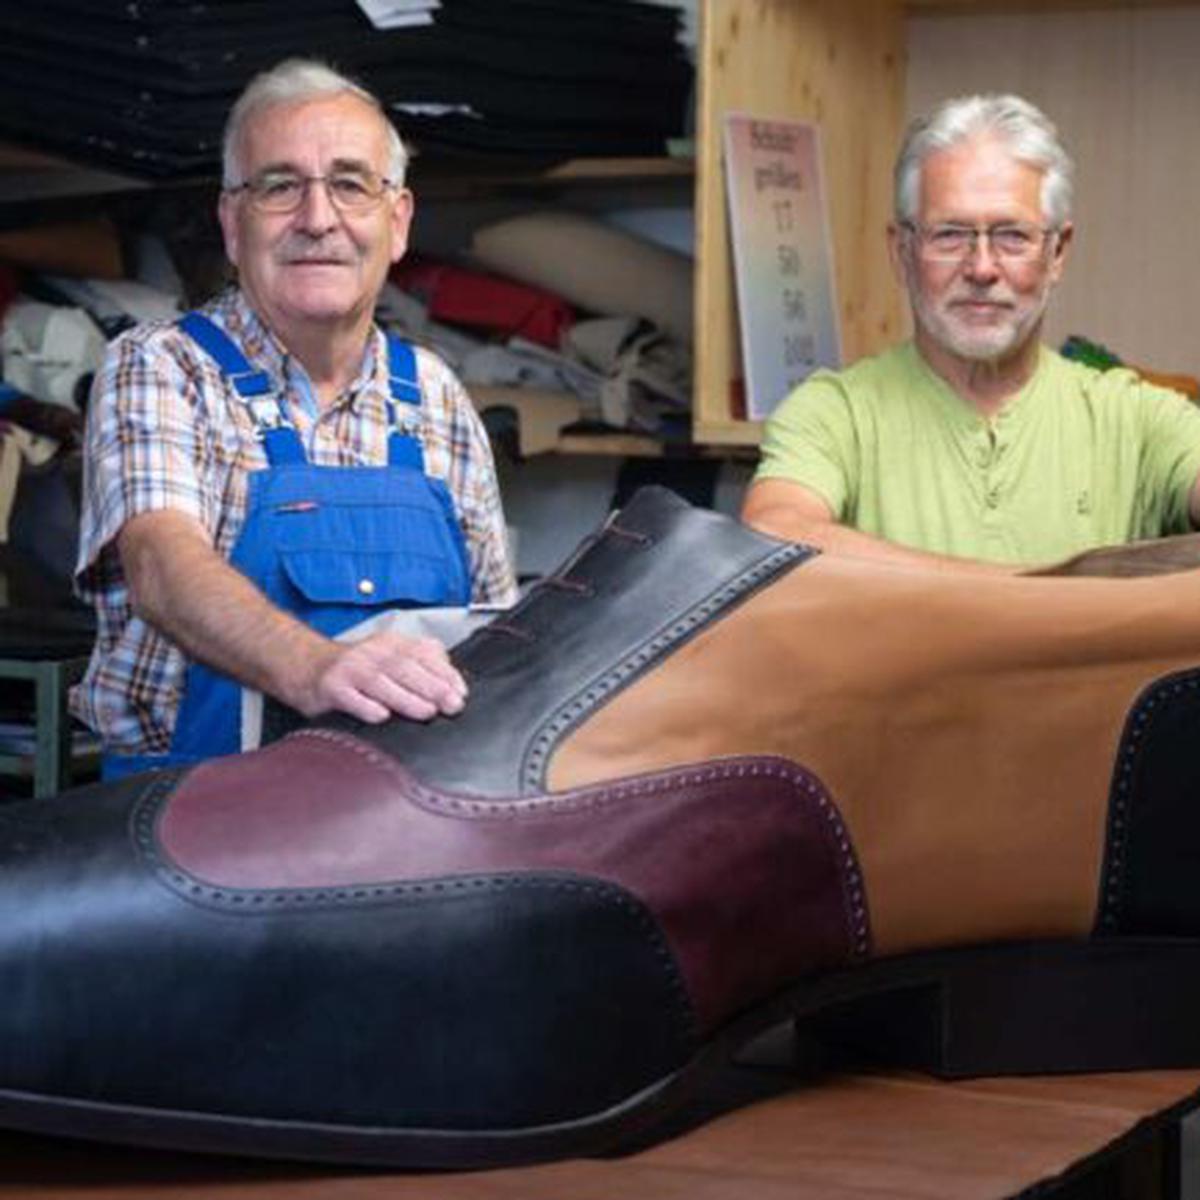 Alemania: así es el zapato más grande jamás visto: de talla 240 y 1,6 metros de largo zapato gigante Historias EC revtli Historias | RESPUESTAS COMERCIO